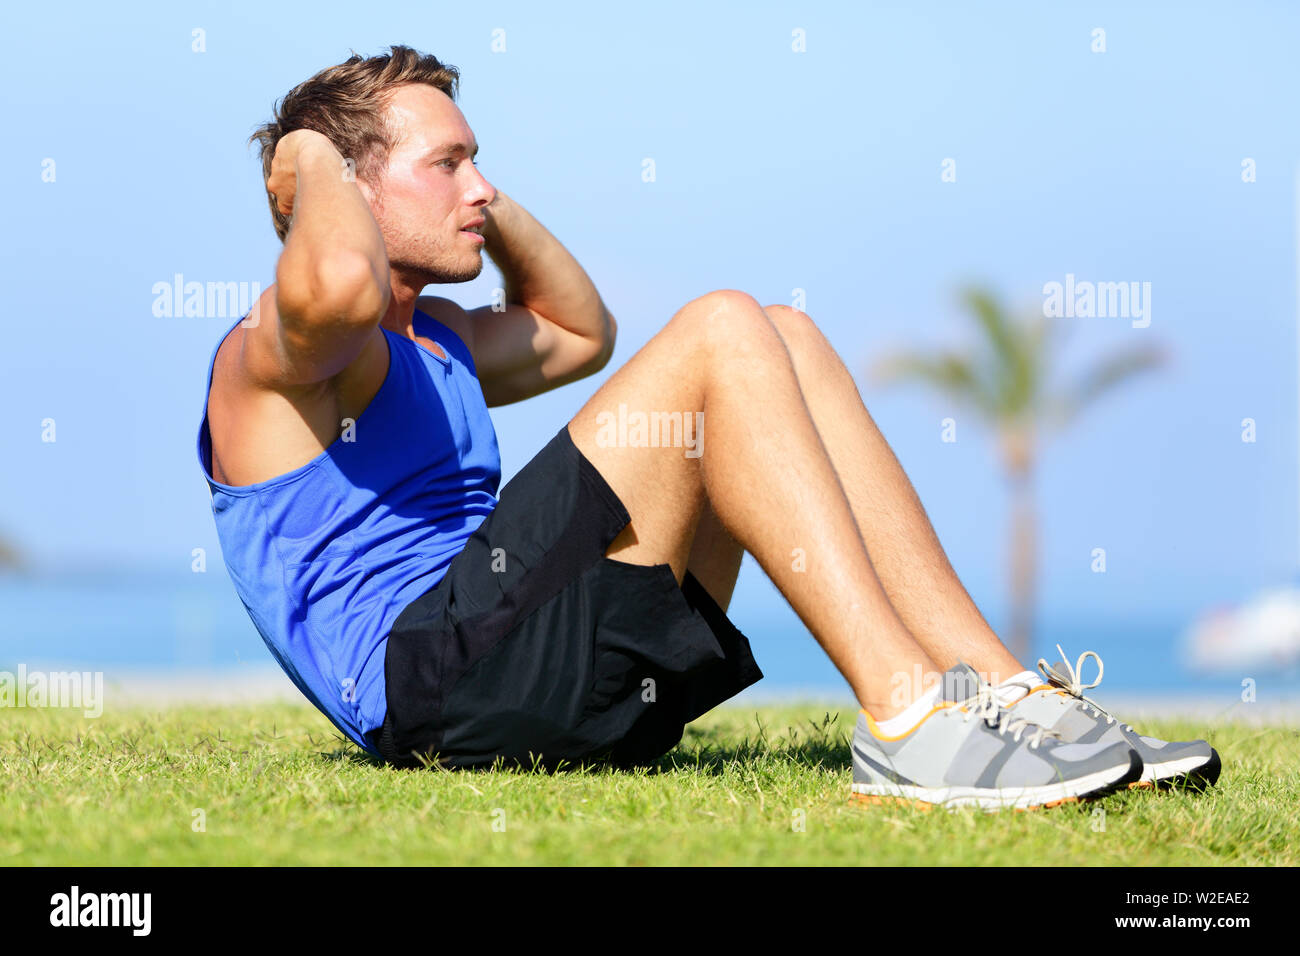 Sit-ups - remise en forme de la formation de l'homme s'asseoir à l'extérieur dans l'herbe en été. Mettre en place de l'athlète masculin de l'exercice de formation croisée. Modèle sport musculaire caucasienne dans son 20s. Banque D'Images